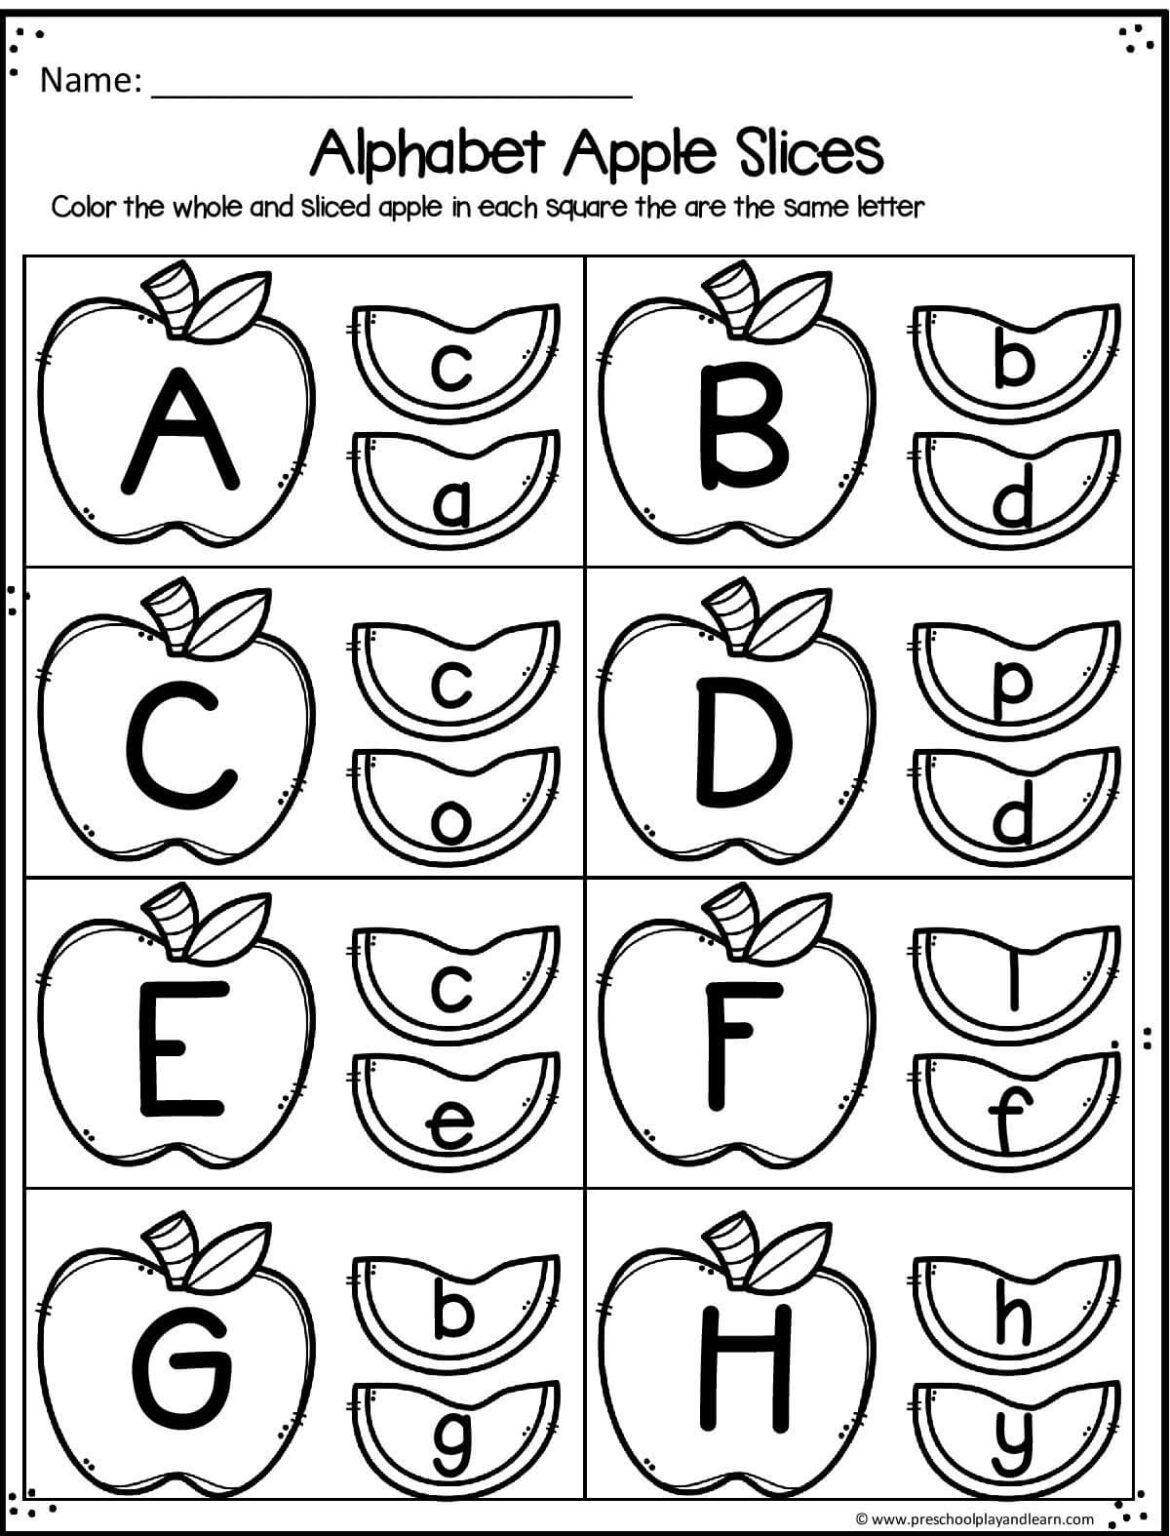 Worksheet Abc For Kindergarten